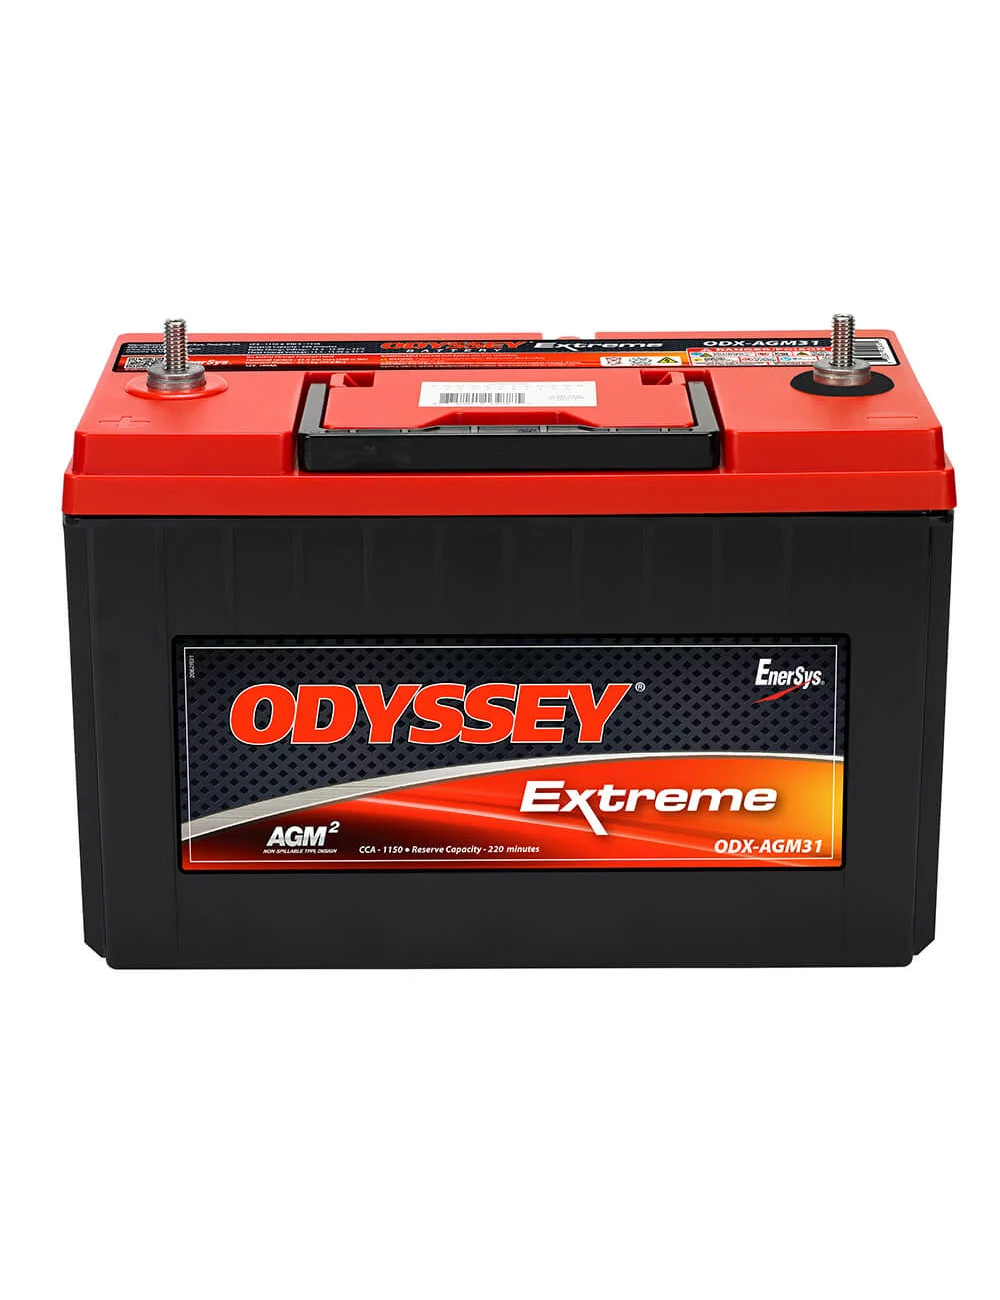 PC2150S batería 12V 100Ah C20 Odyssey Extreme ODX-AGM31